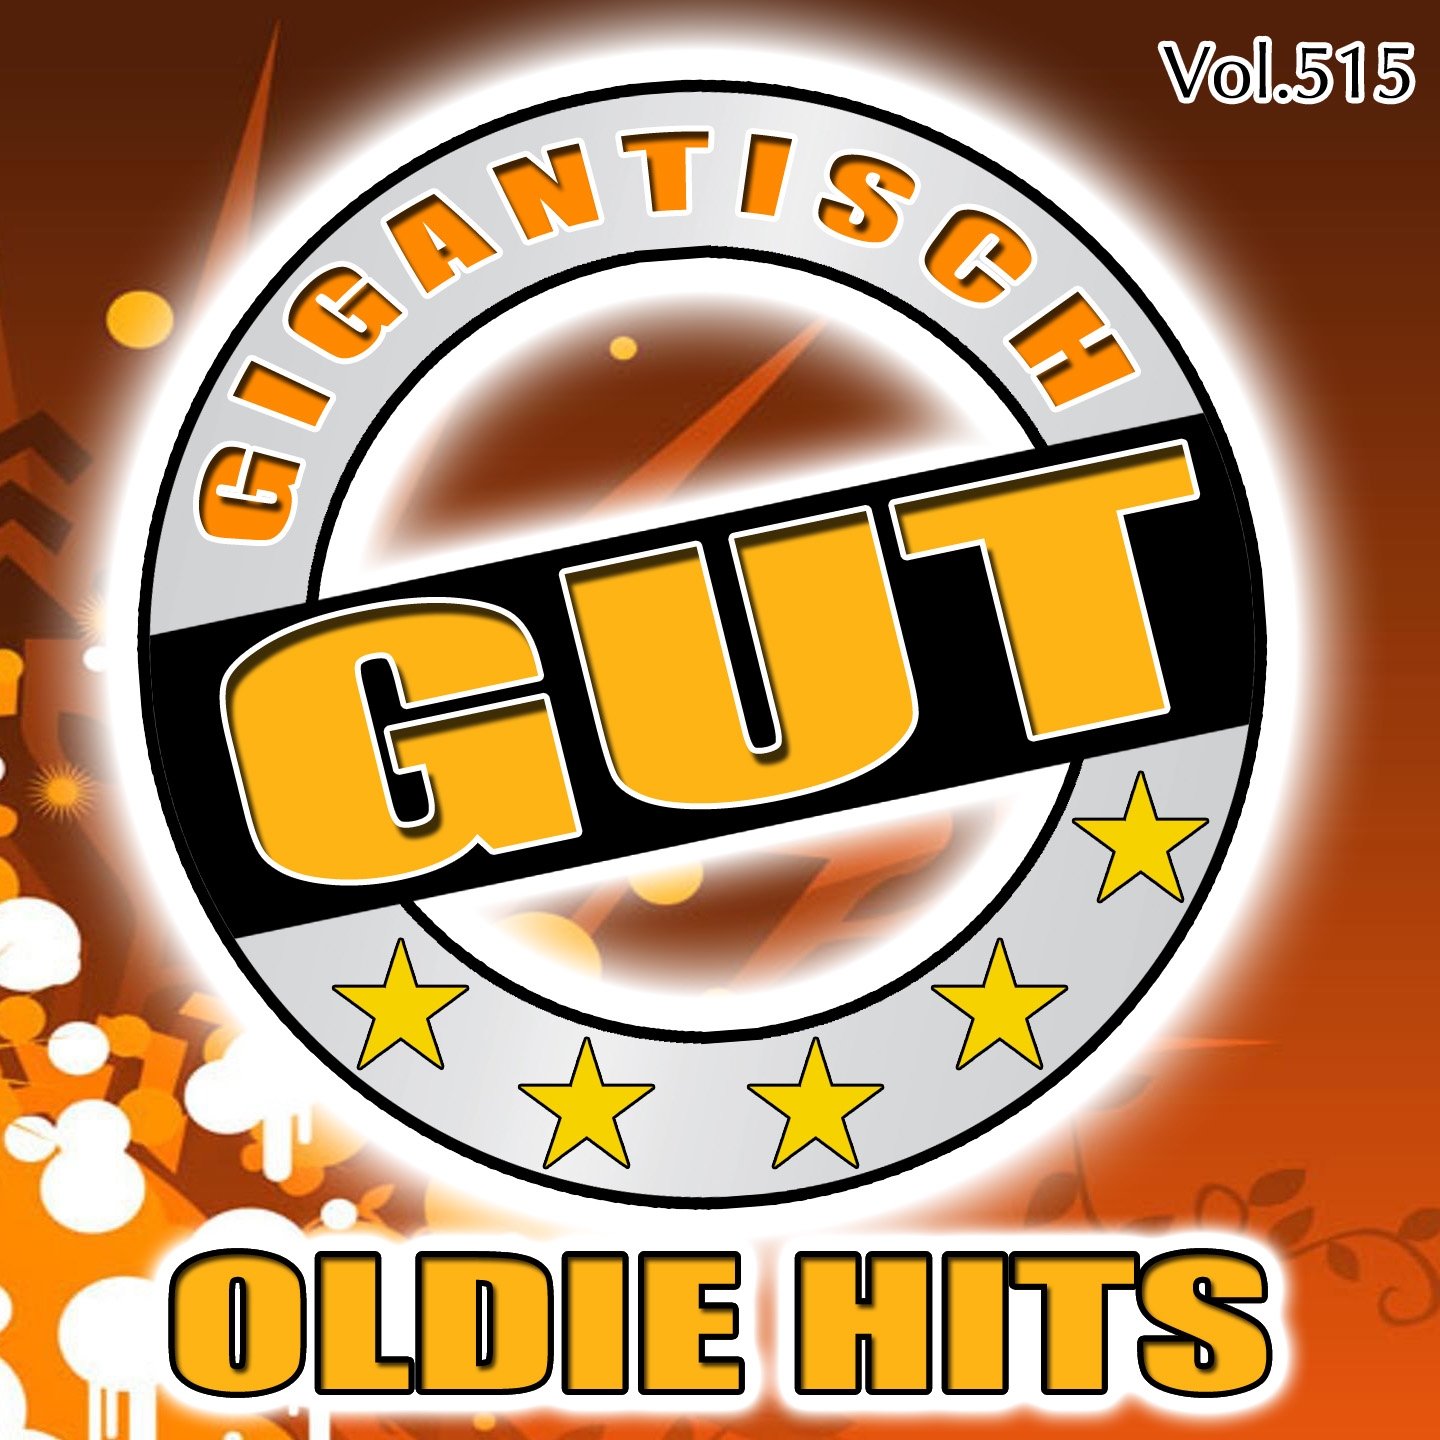 Gigantisch Gut: Oldie Hits, Vol. 515